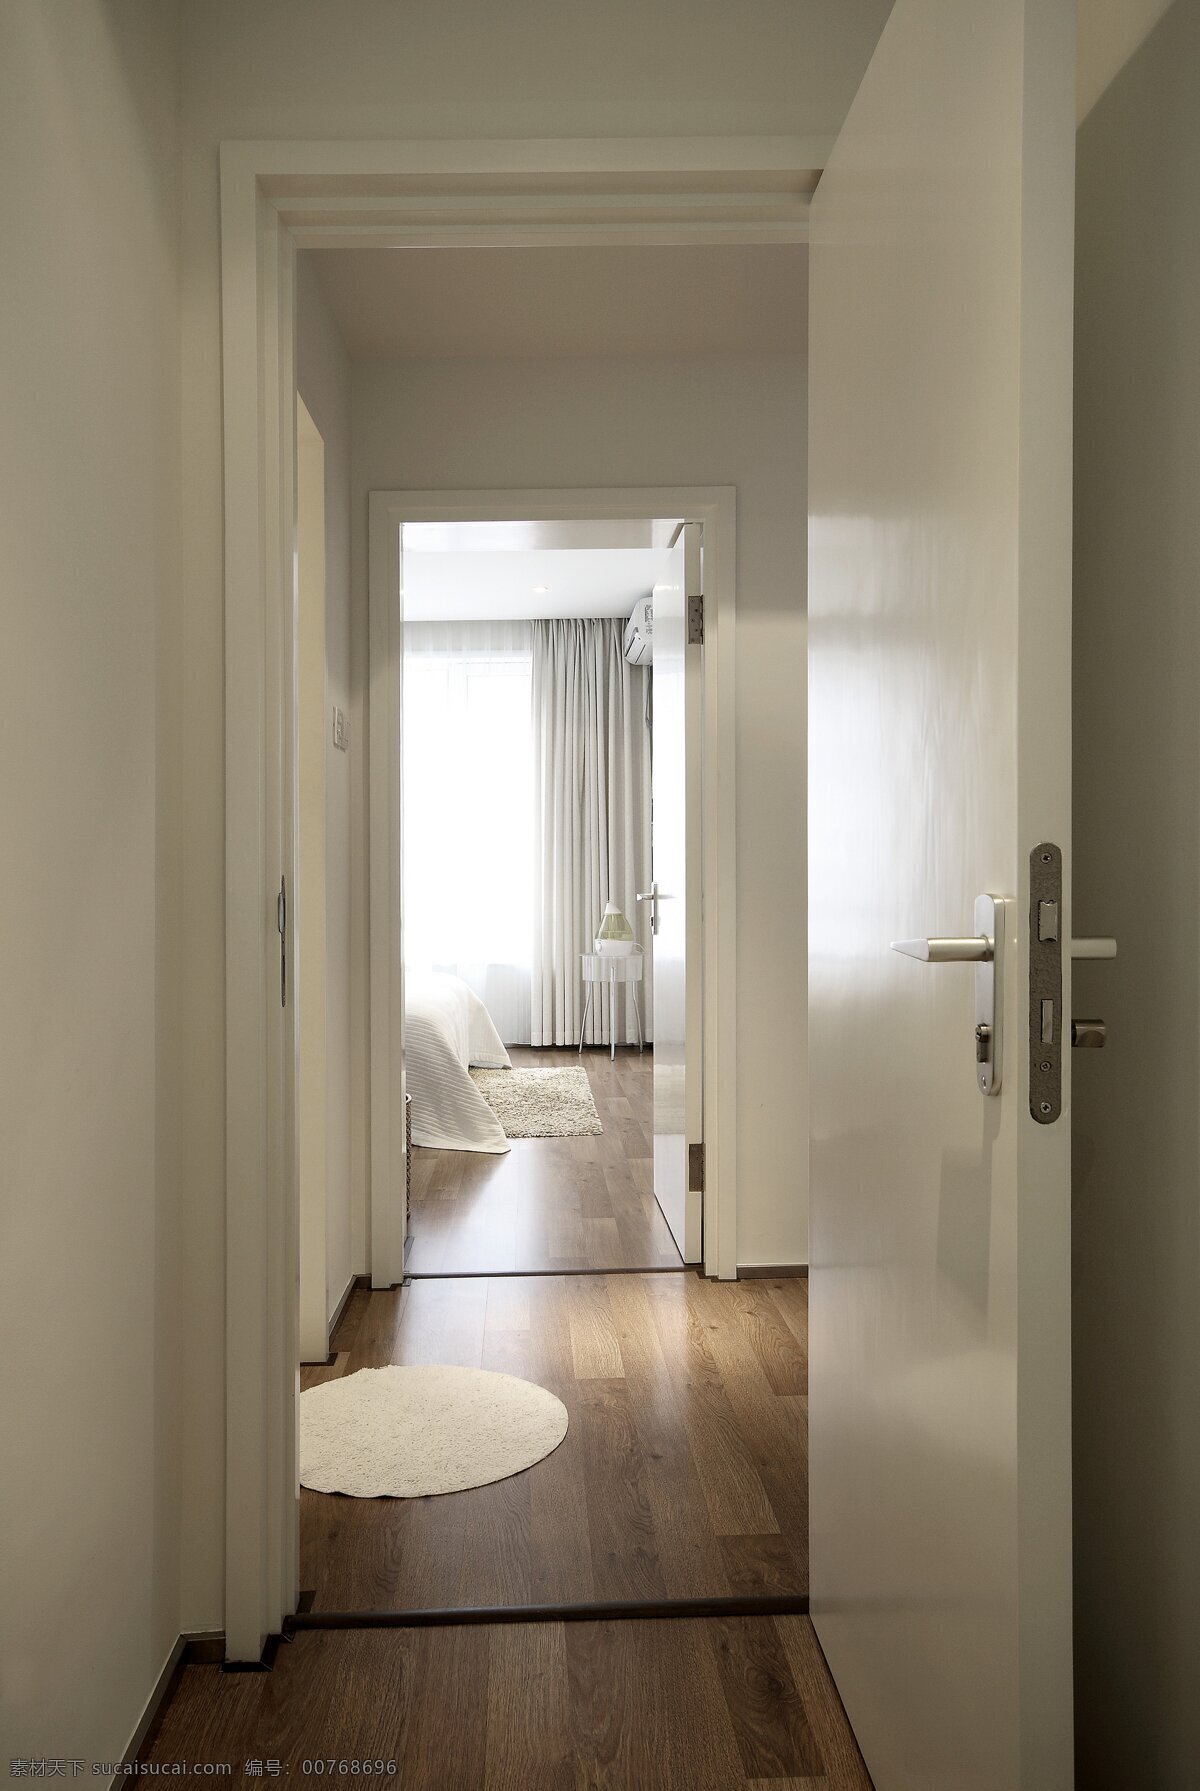 简约 风 室内设计 卧室 走廊 效果图 现代 家装 家居 家具 墙壁 原木地板